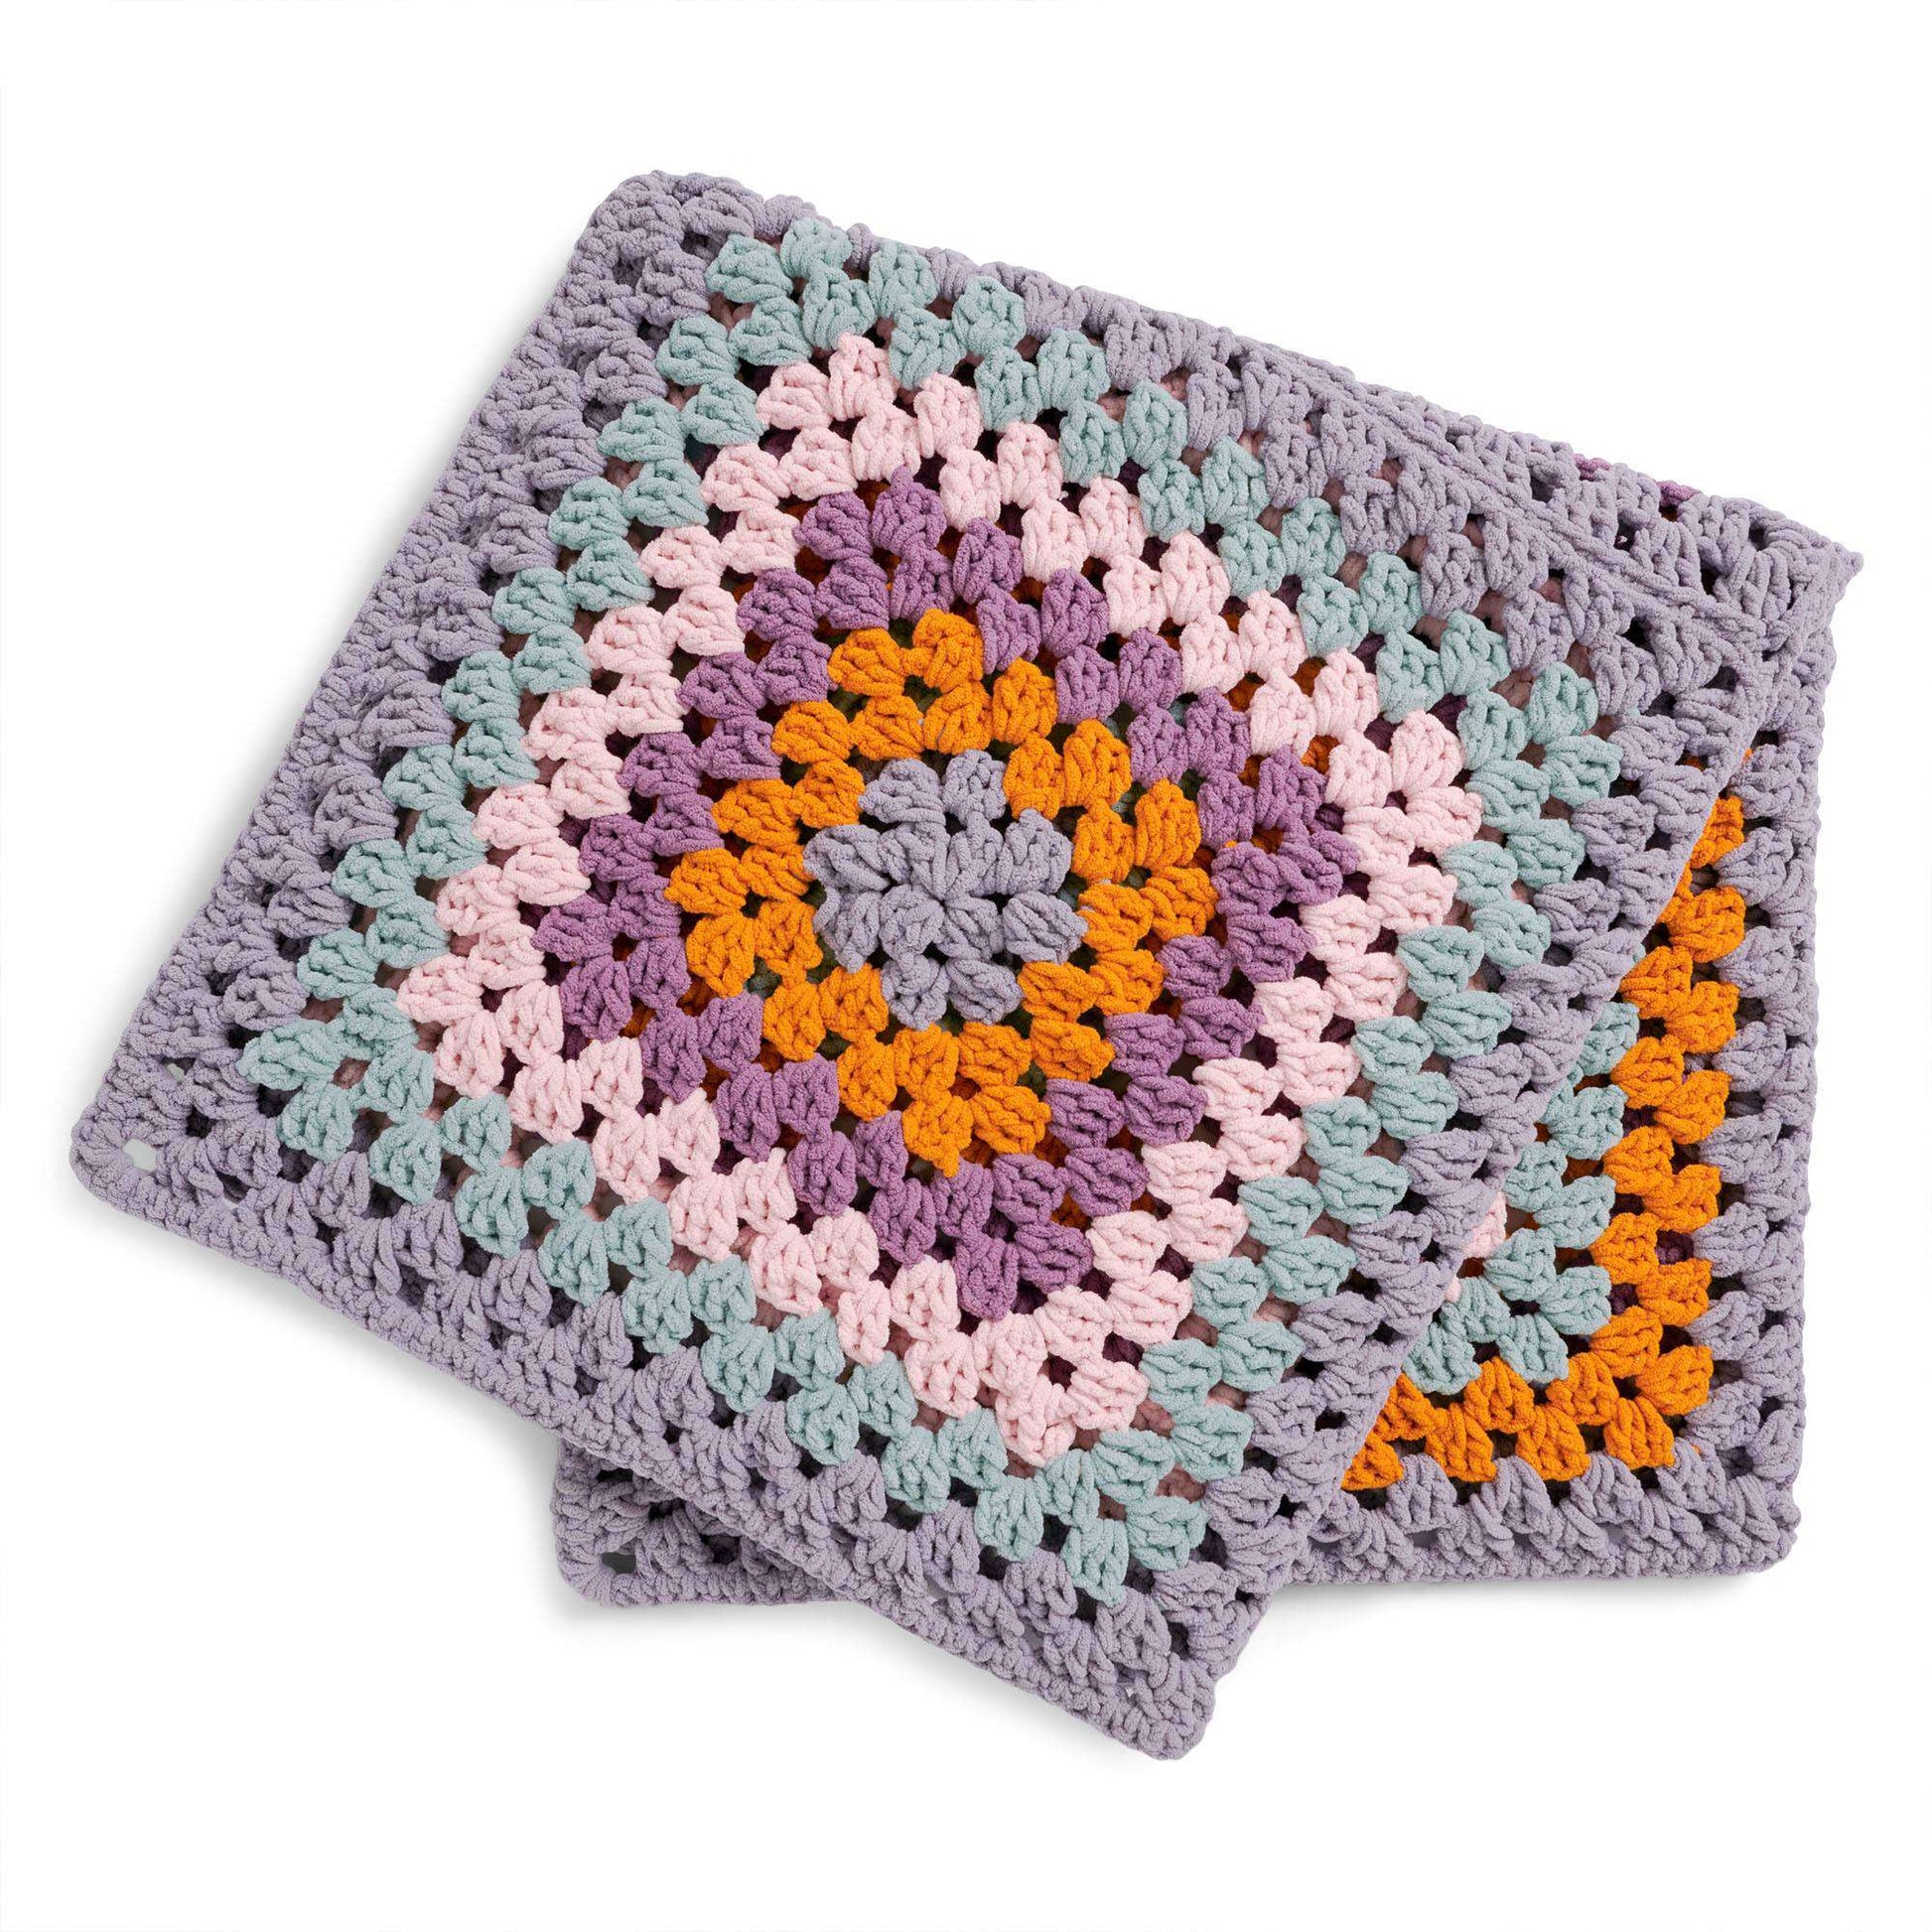 Free Bernat Great Granny Crochet Blanket Pattern